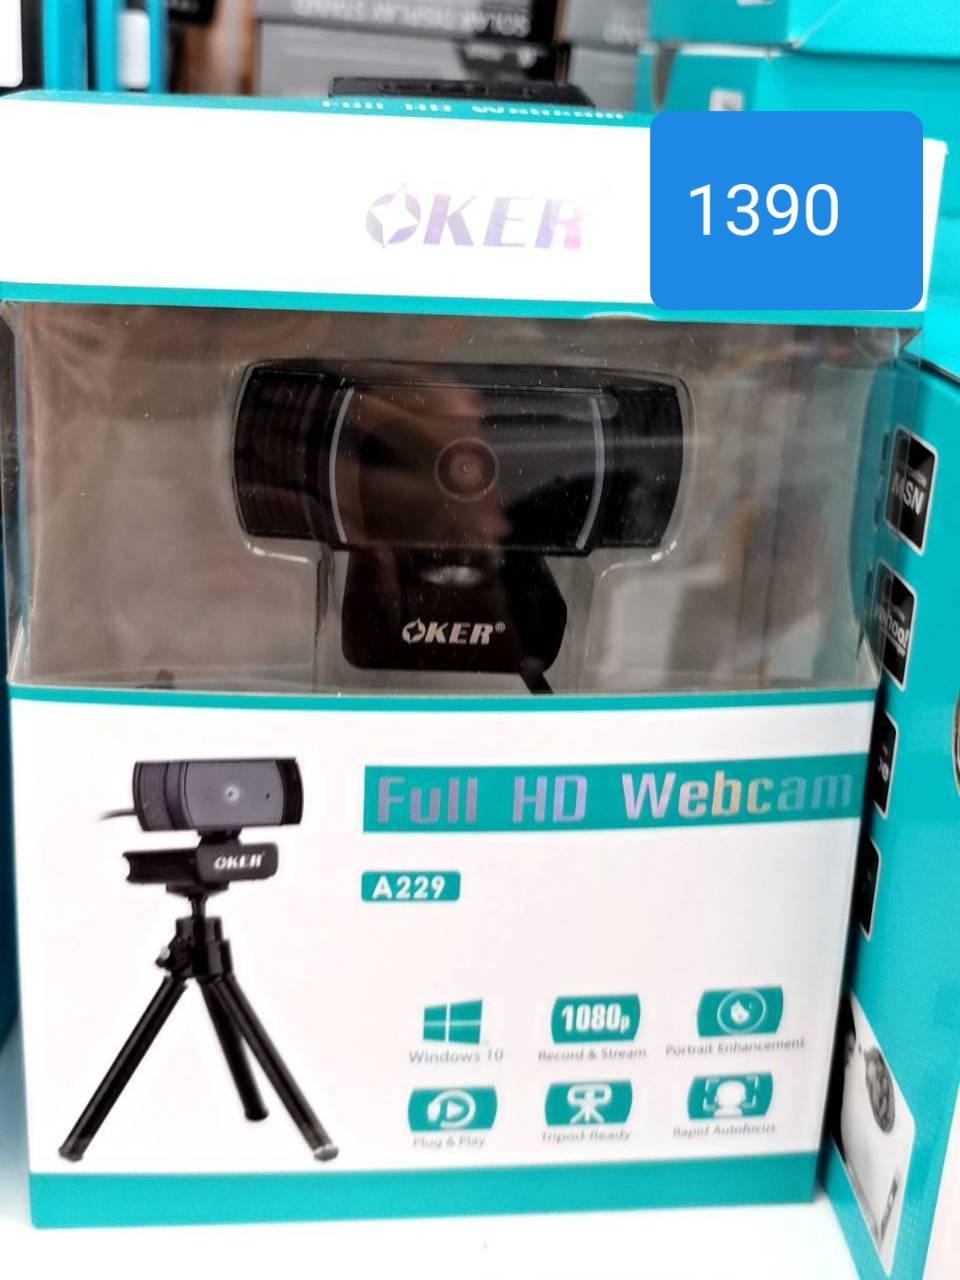 กล้องเว็บแคม HD webcam อุปกรณ์ครบประกันศูนย์ เหมาะเรียนออนไลน์ ประชุม